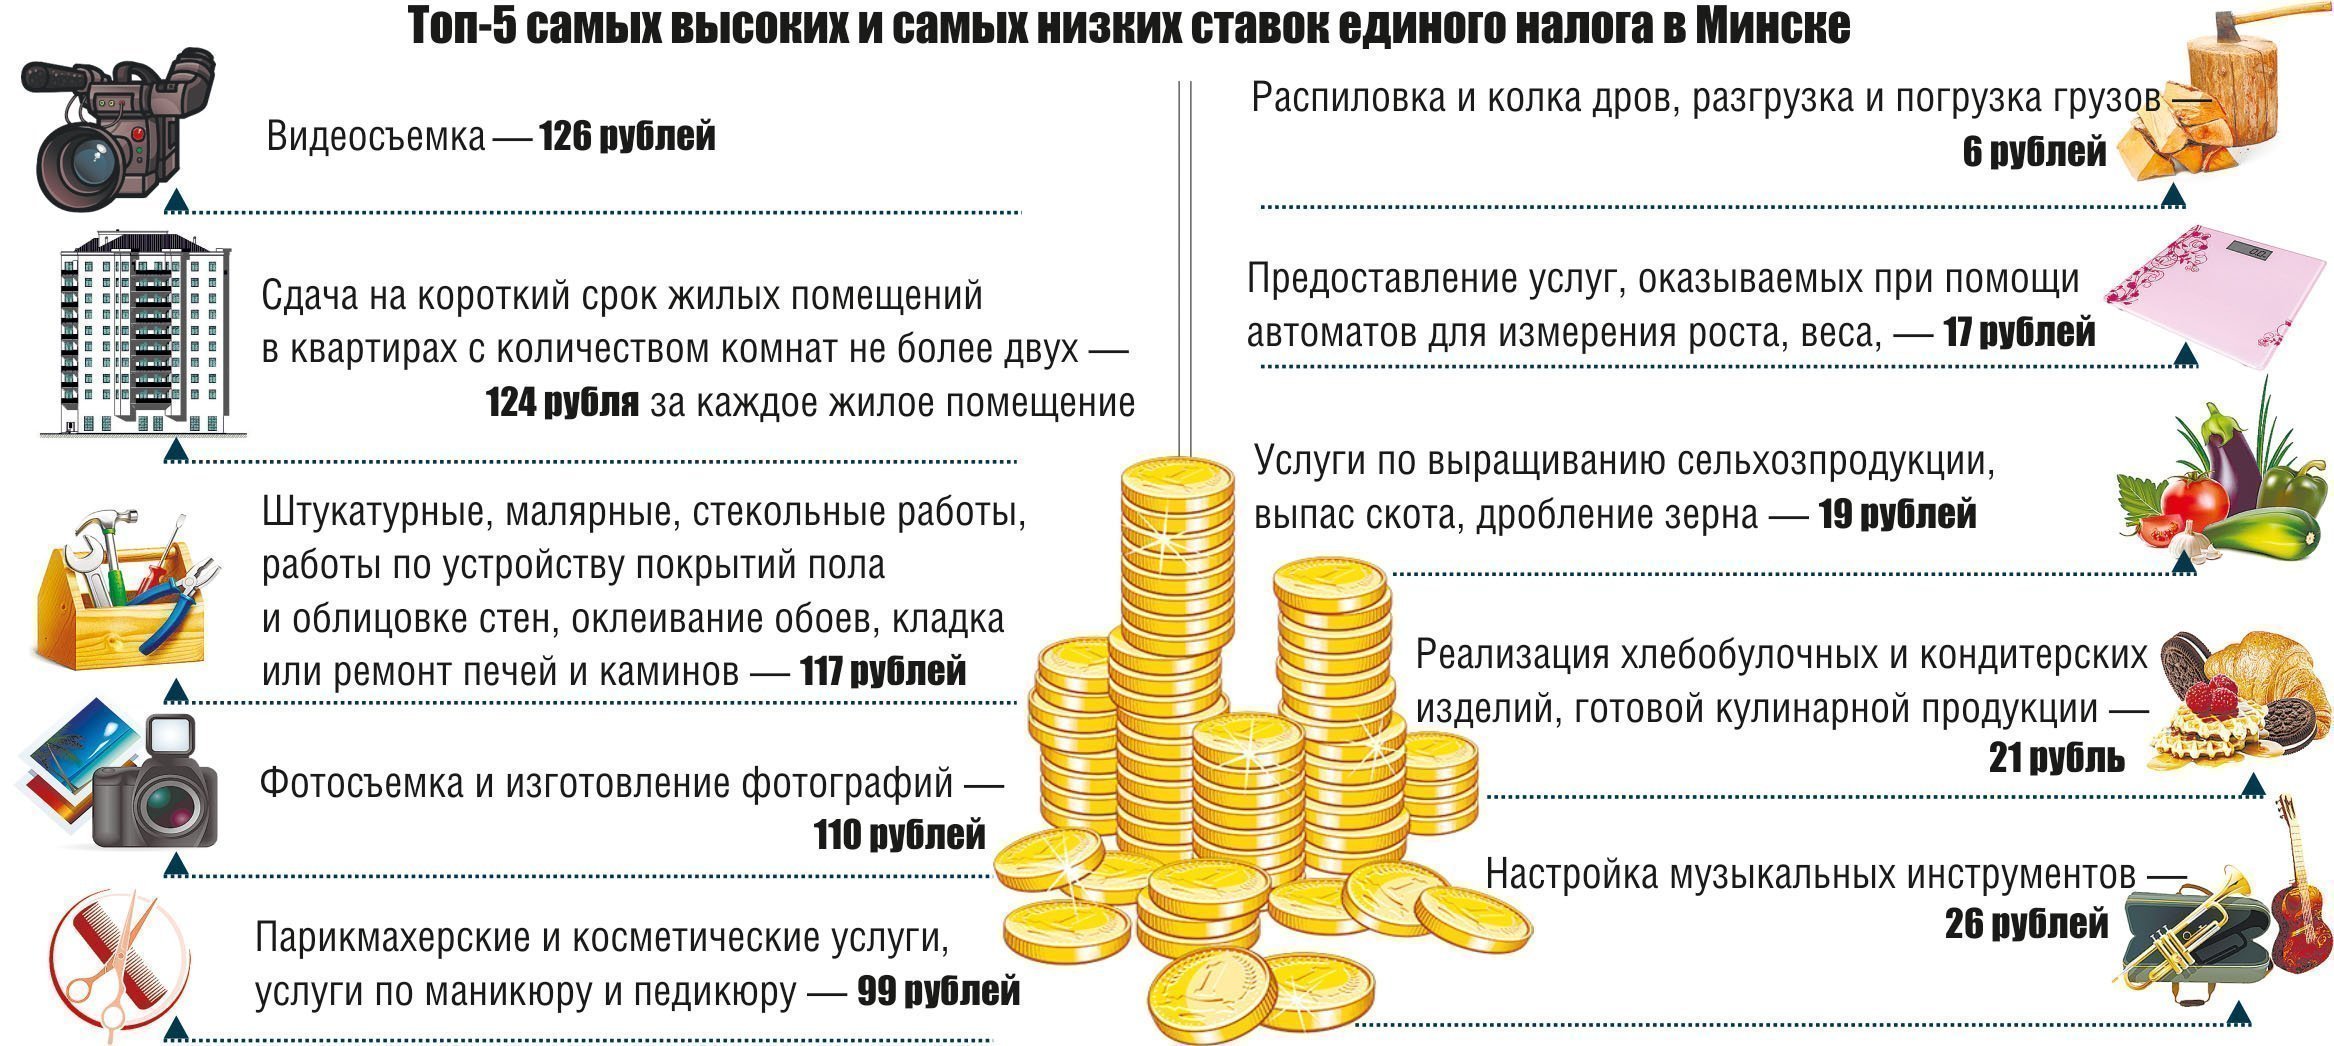 Ставки налогов в беларуси. Бонусы и премии для налоговой. Какой единый налог для самозанятых в Беларуси по установке дверей.